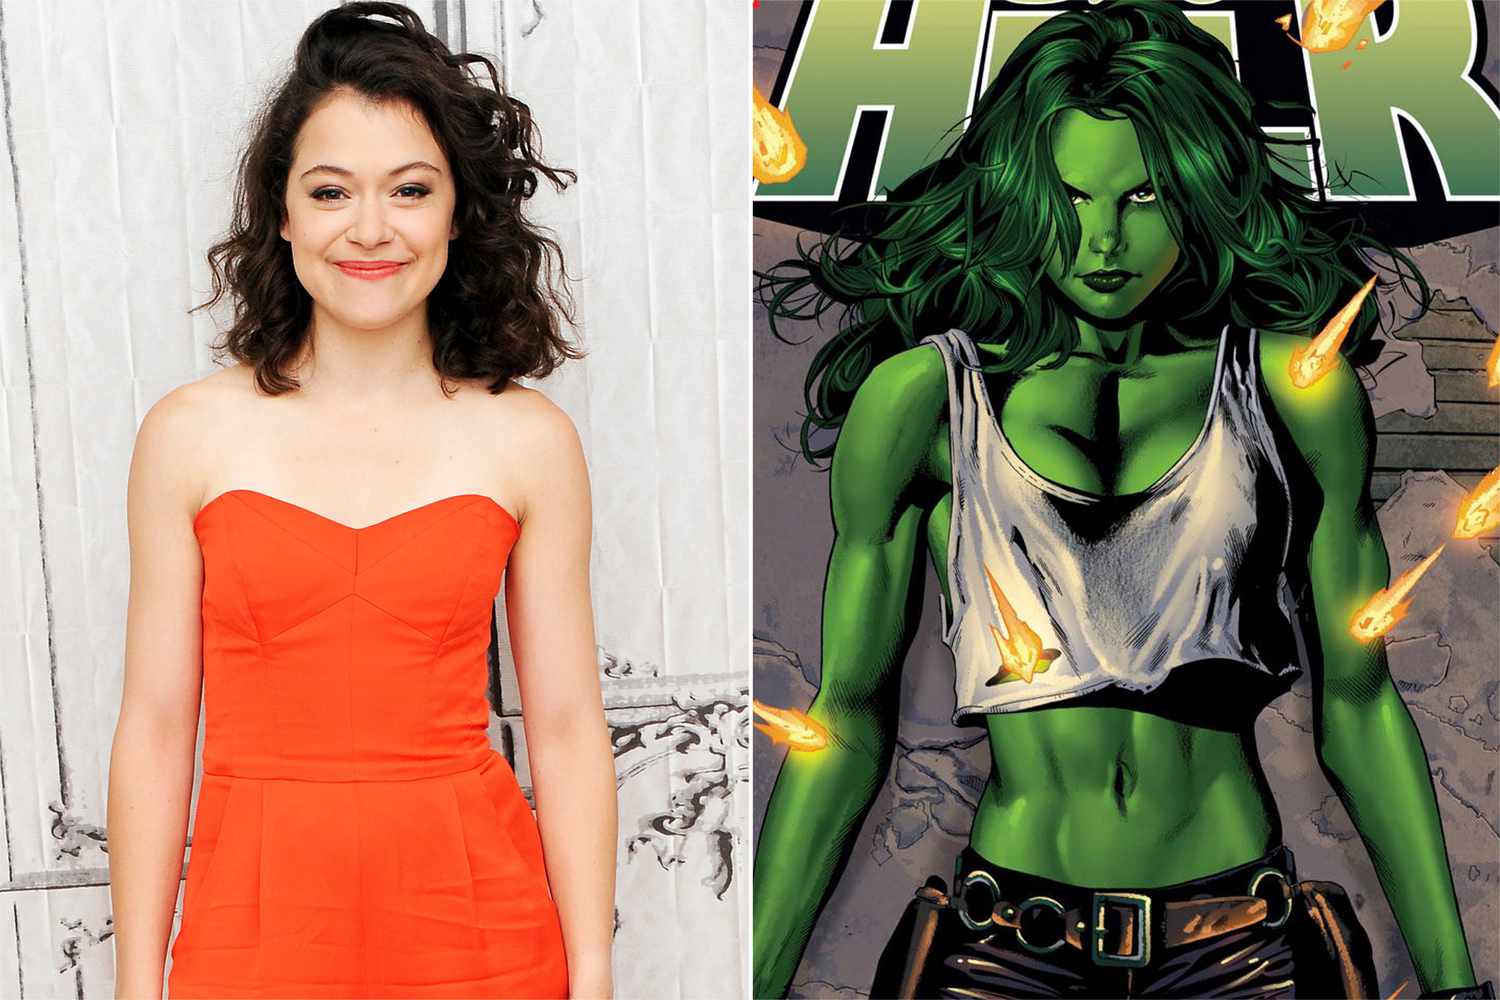 Tatiana Maslany to Star in Marvel's She-Hulk Disney+ Series | PEOPLE.com